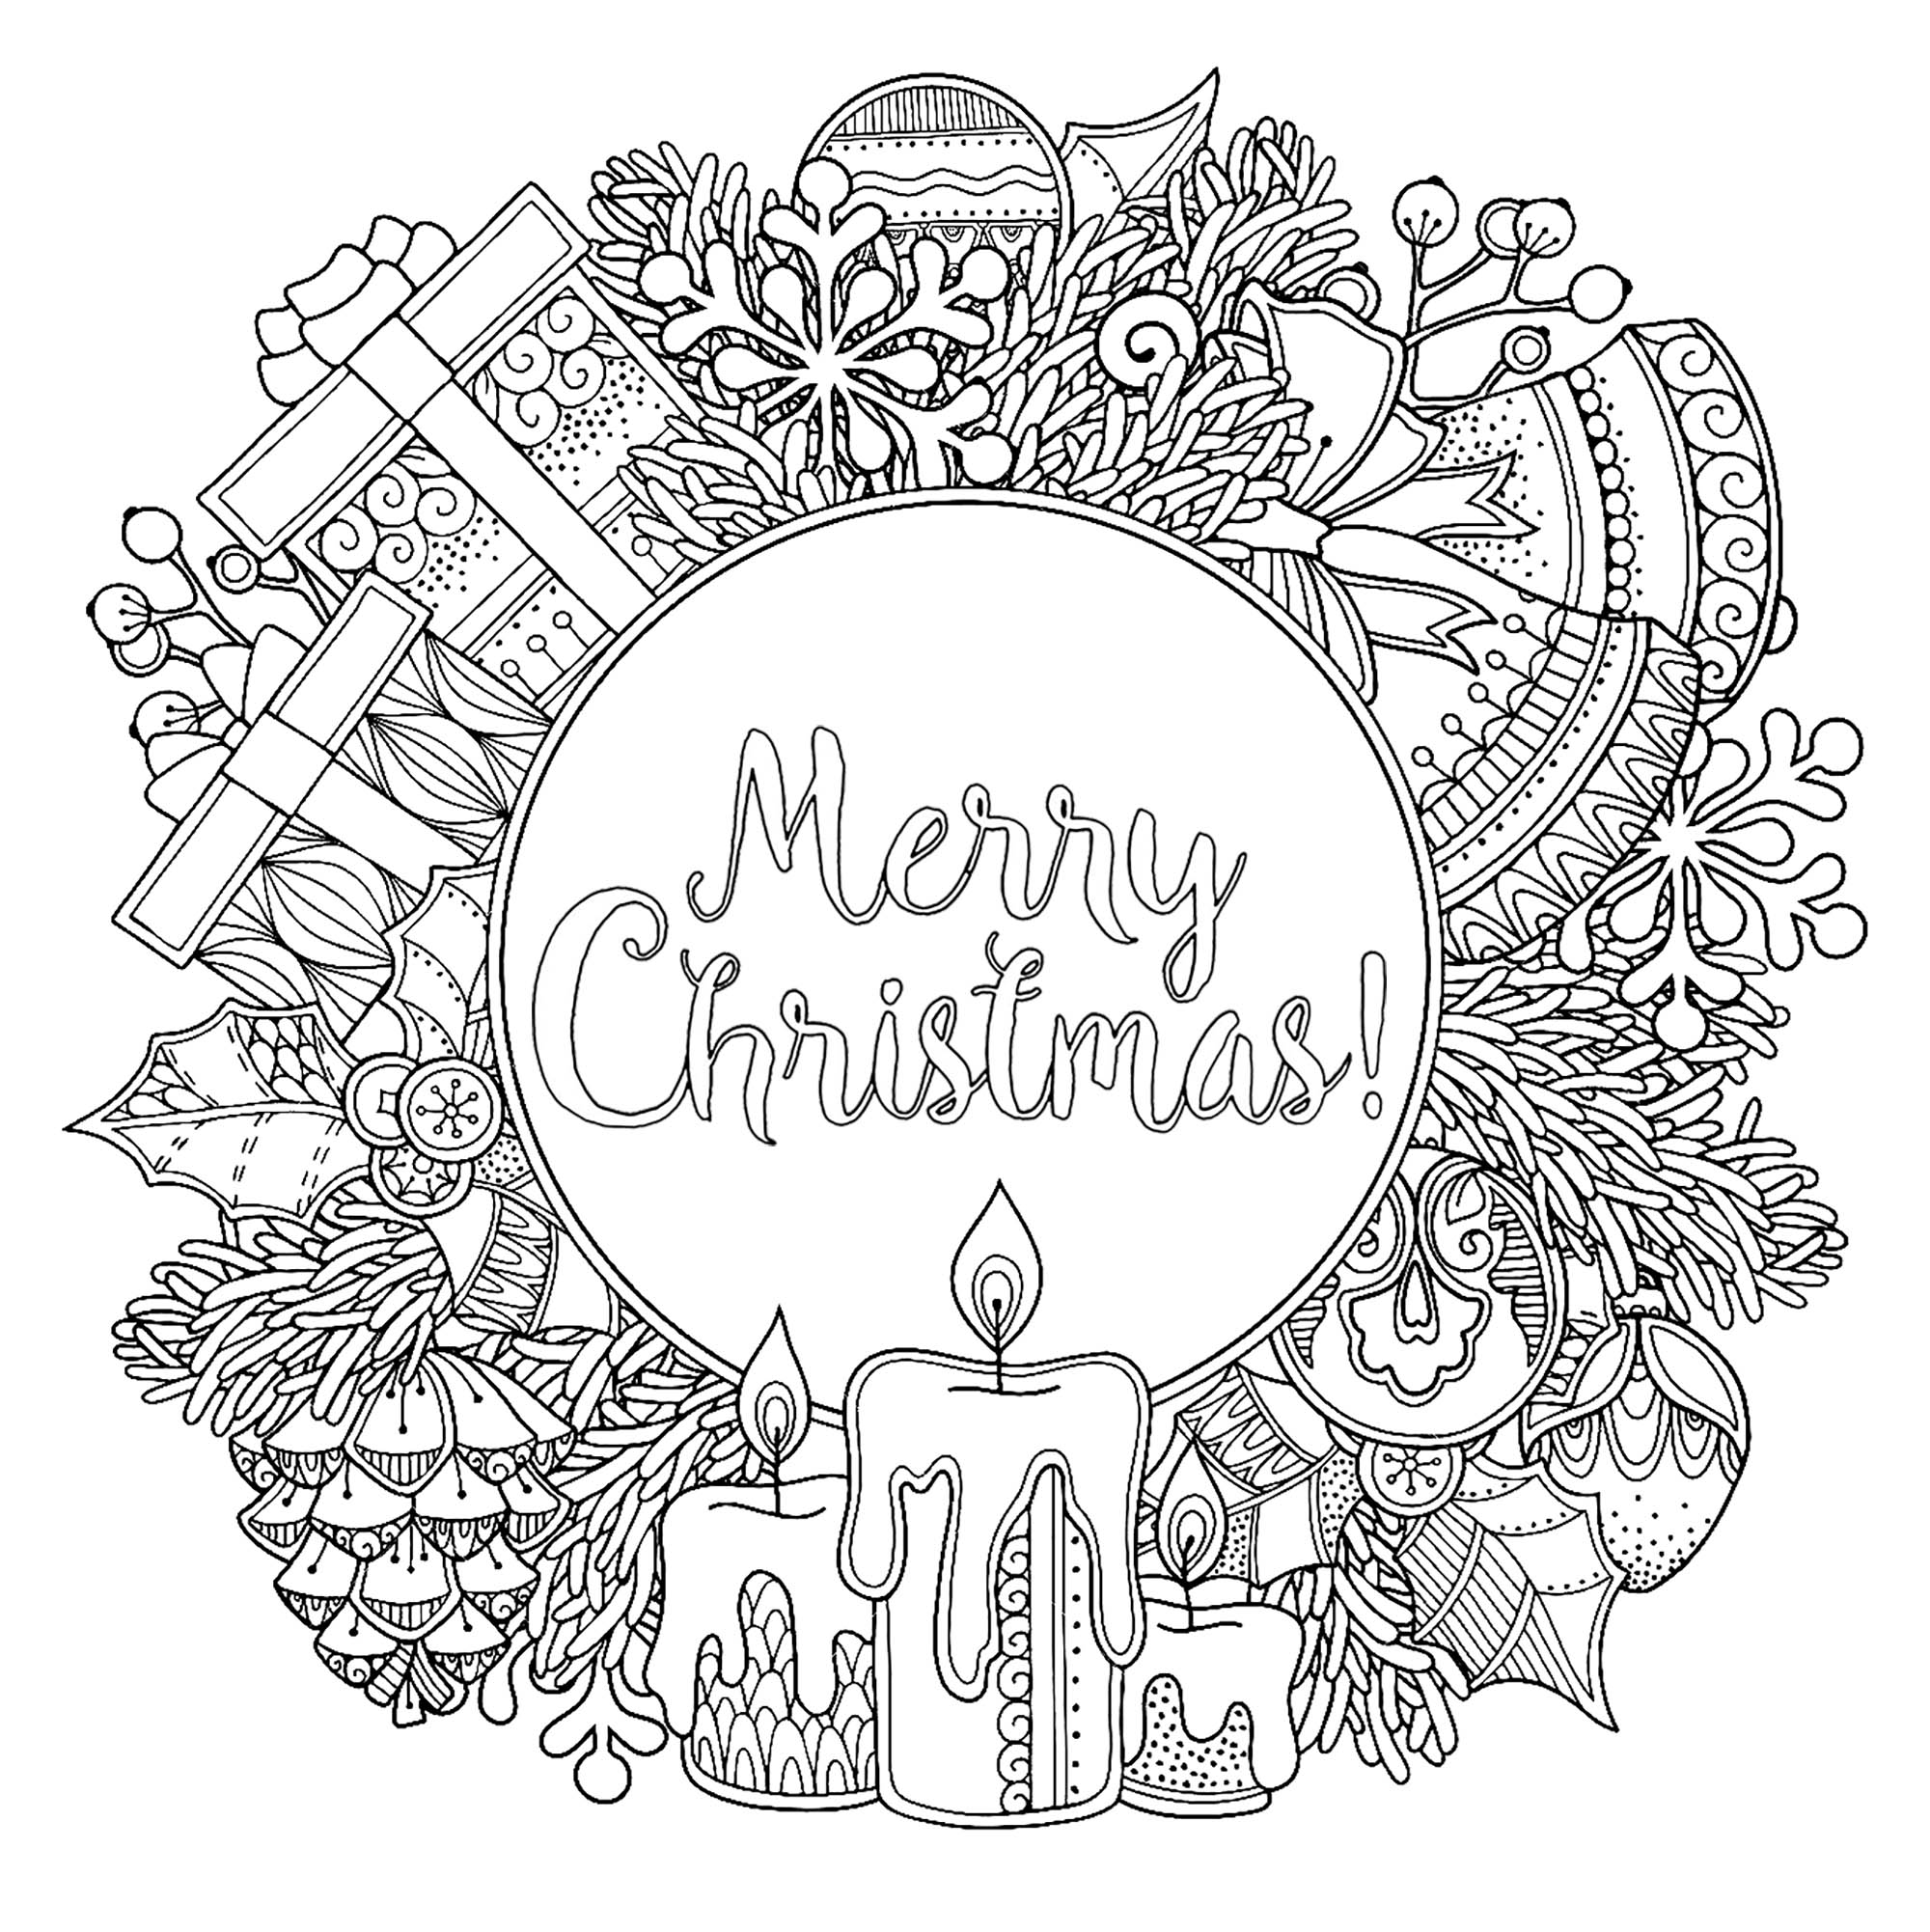 Cornice rotonda natalizia in stile doodle, con il testo 'Merry Christmas' al centro. Candele, regali, mele di pino, campane... Vari simboli natalizi famosi sono qui, Fonte : 123rf   Artista : Olga Kostenko